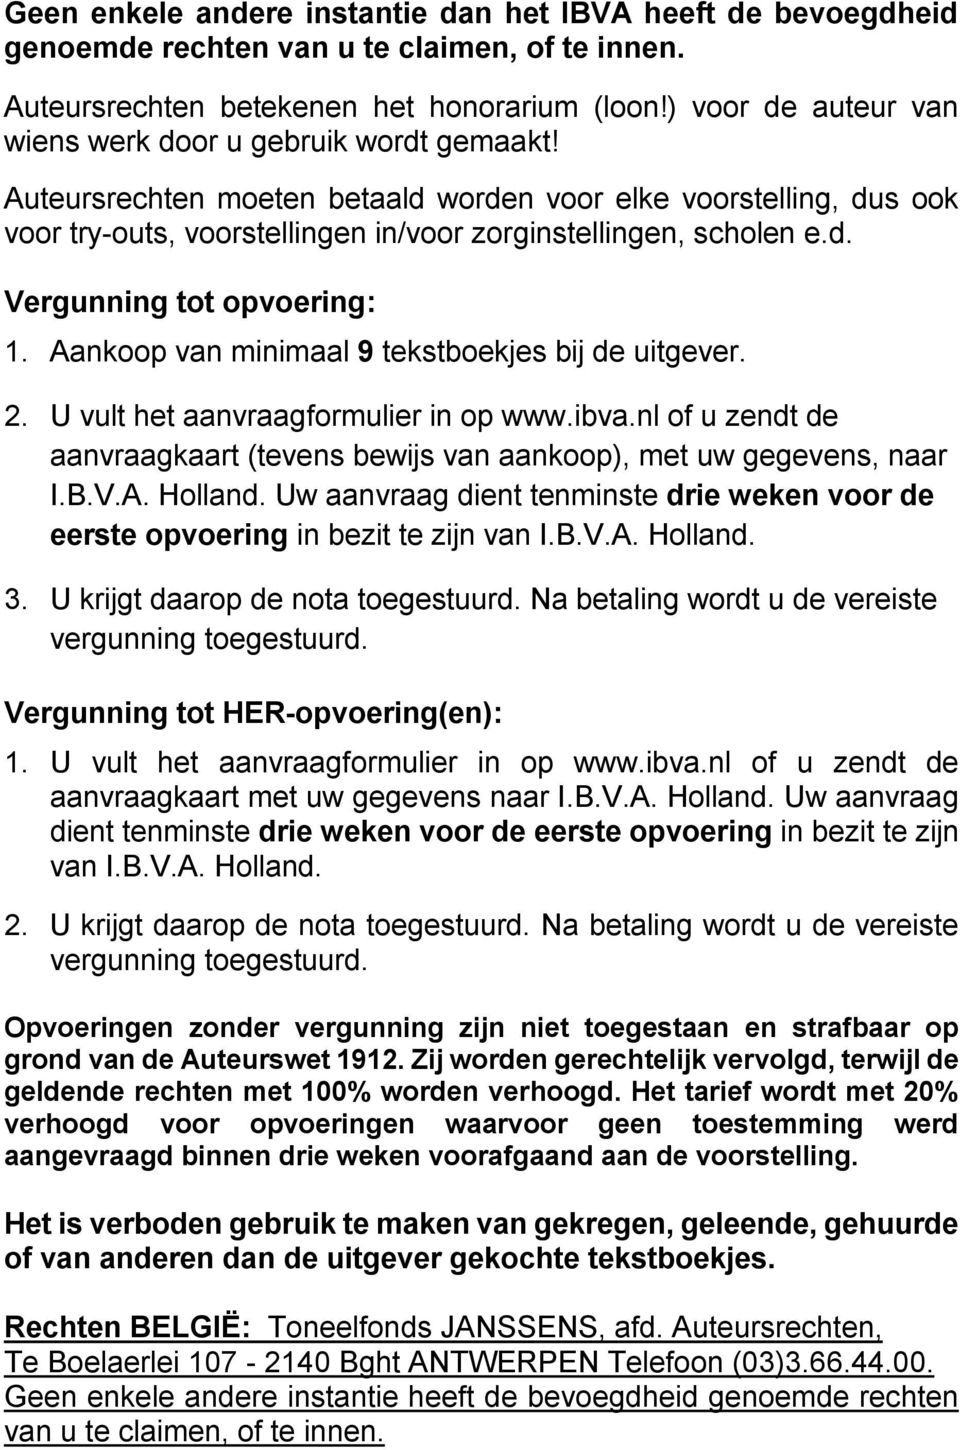 Aankoop van minimaal 9 tekstboekjes bij de uitgever. 2. U vult het aanvraagformulier in op www.ibva.nl of u zendt de aanvraagkaart (tevens bewijs van aankoop), met uw gegevens, naar I.B.V.A. Holland.